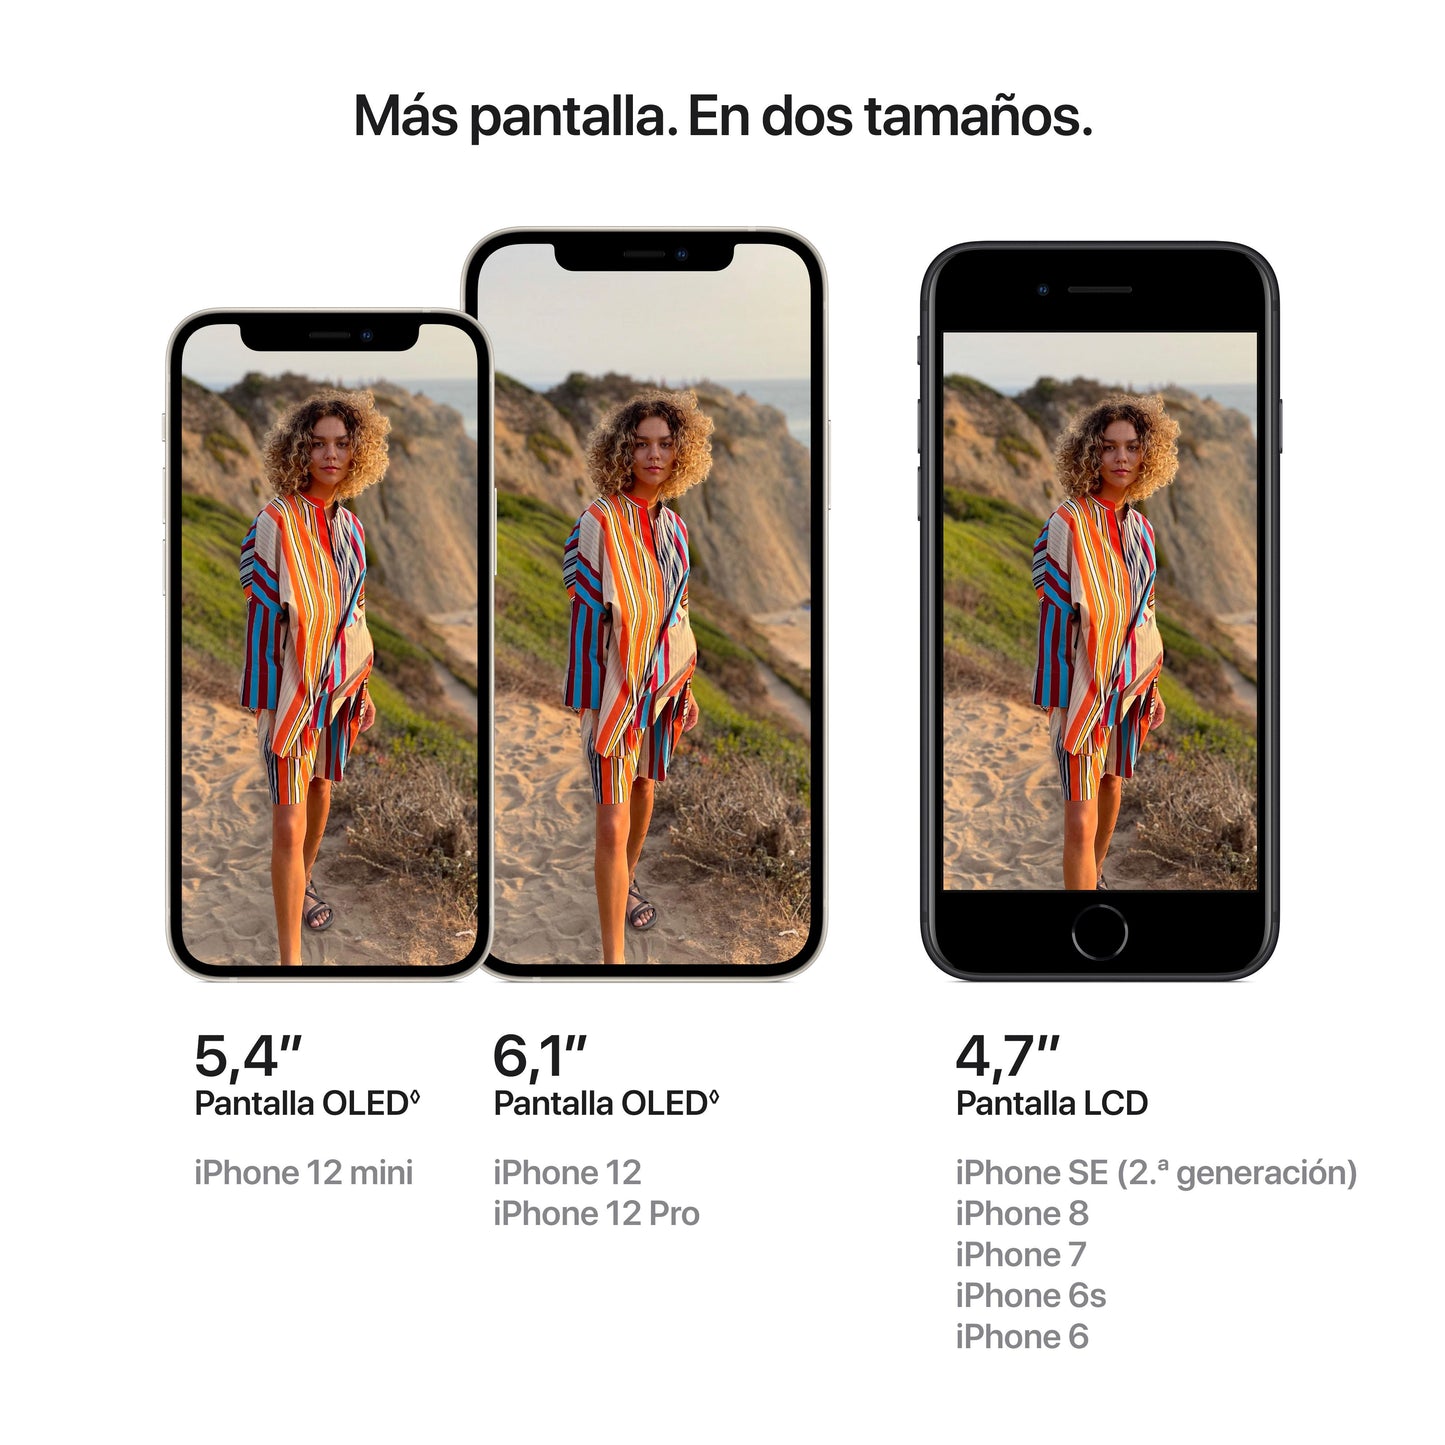 iPhone 12, Malva, 64 GB - Rossellimac